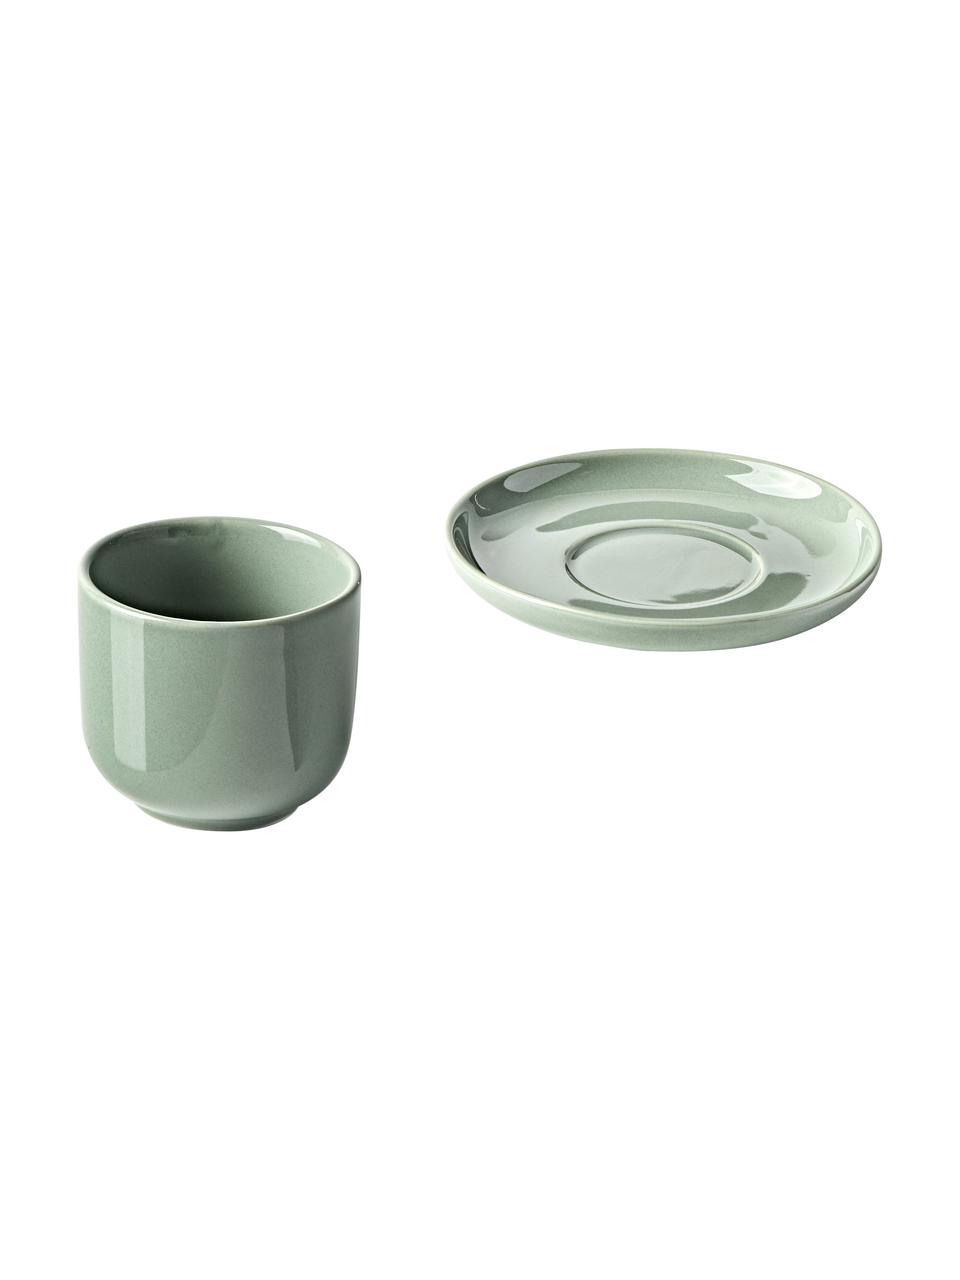 Tazas de café expresso con platitos de porcelana Nessa, 4 uds., Porcelana dura de alta calidad, Verde salvia, Ø 7 x Al 6 cm